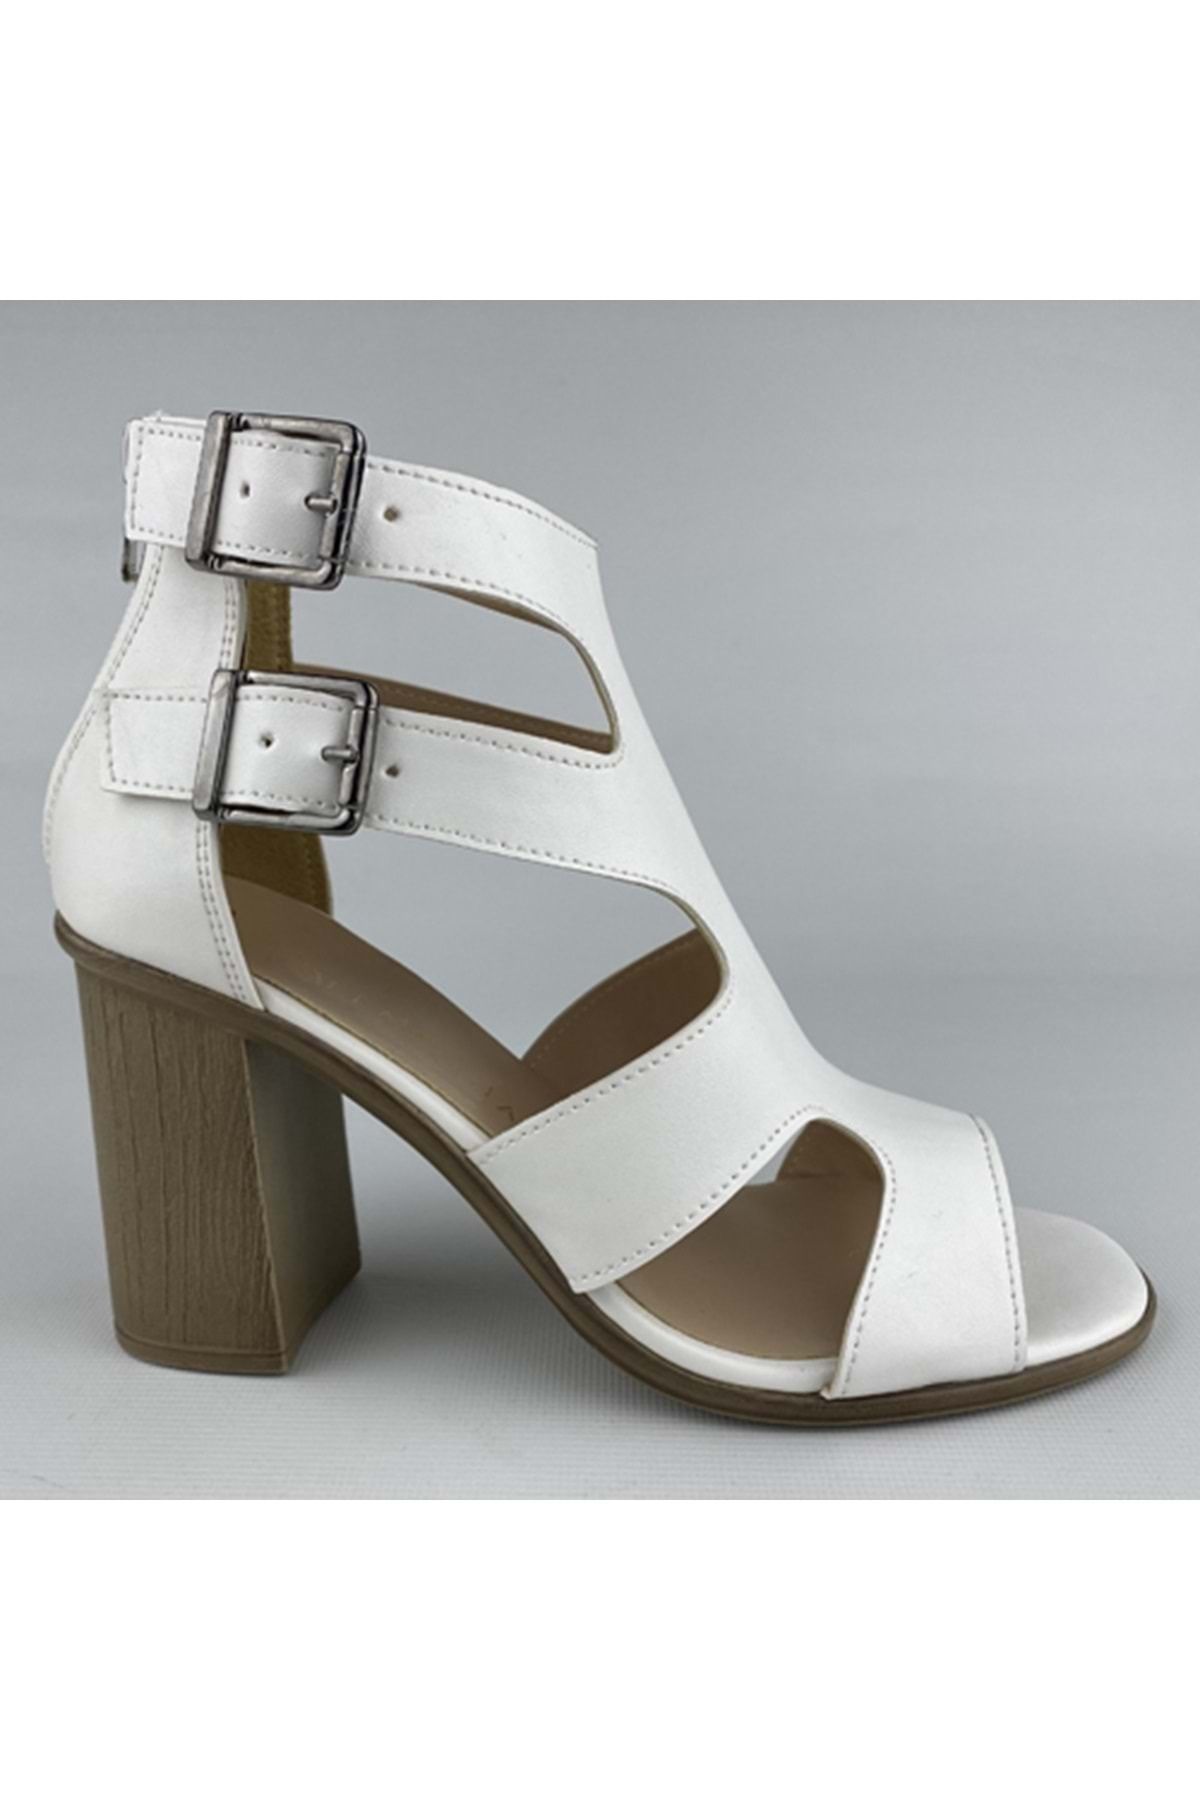 Astorya Beyaz Fermuarlı Yandan Kayışlı 9 Cm Kalın Topuklu Kafes Model Kadın Ayakkabı